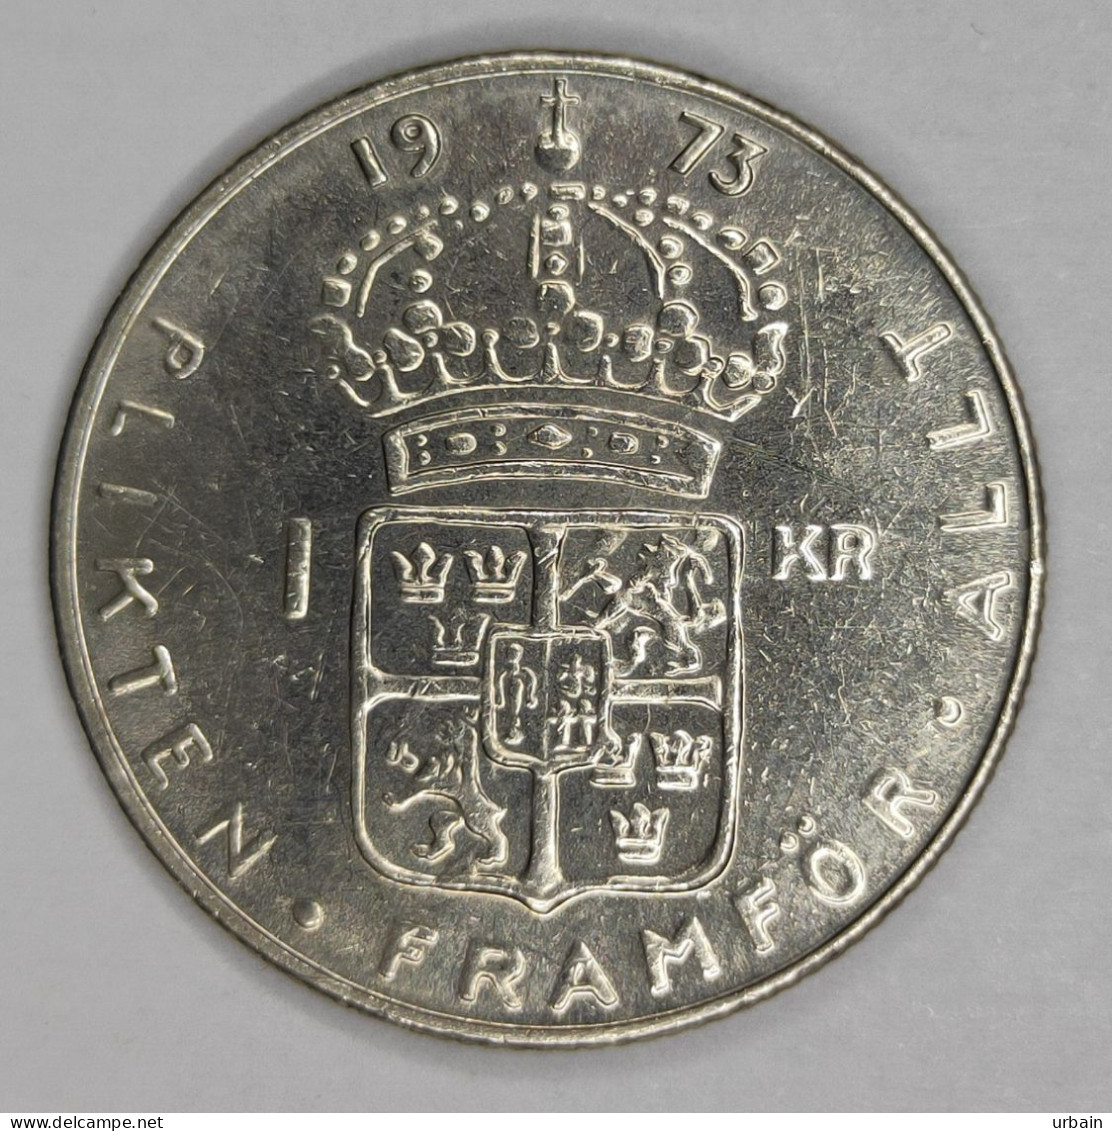 10 coins - SWEDEN - from 1956 to 1982 - Carl XVI Gustaf, Gustaf VI Adolf